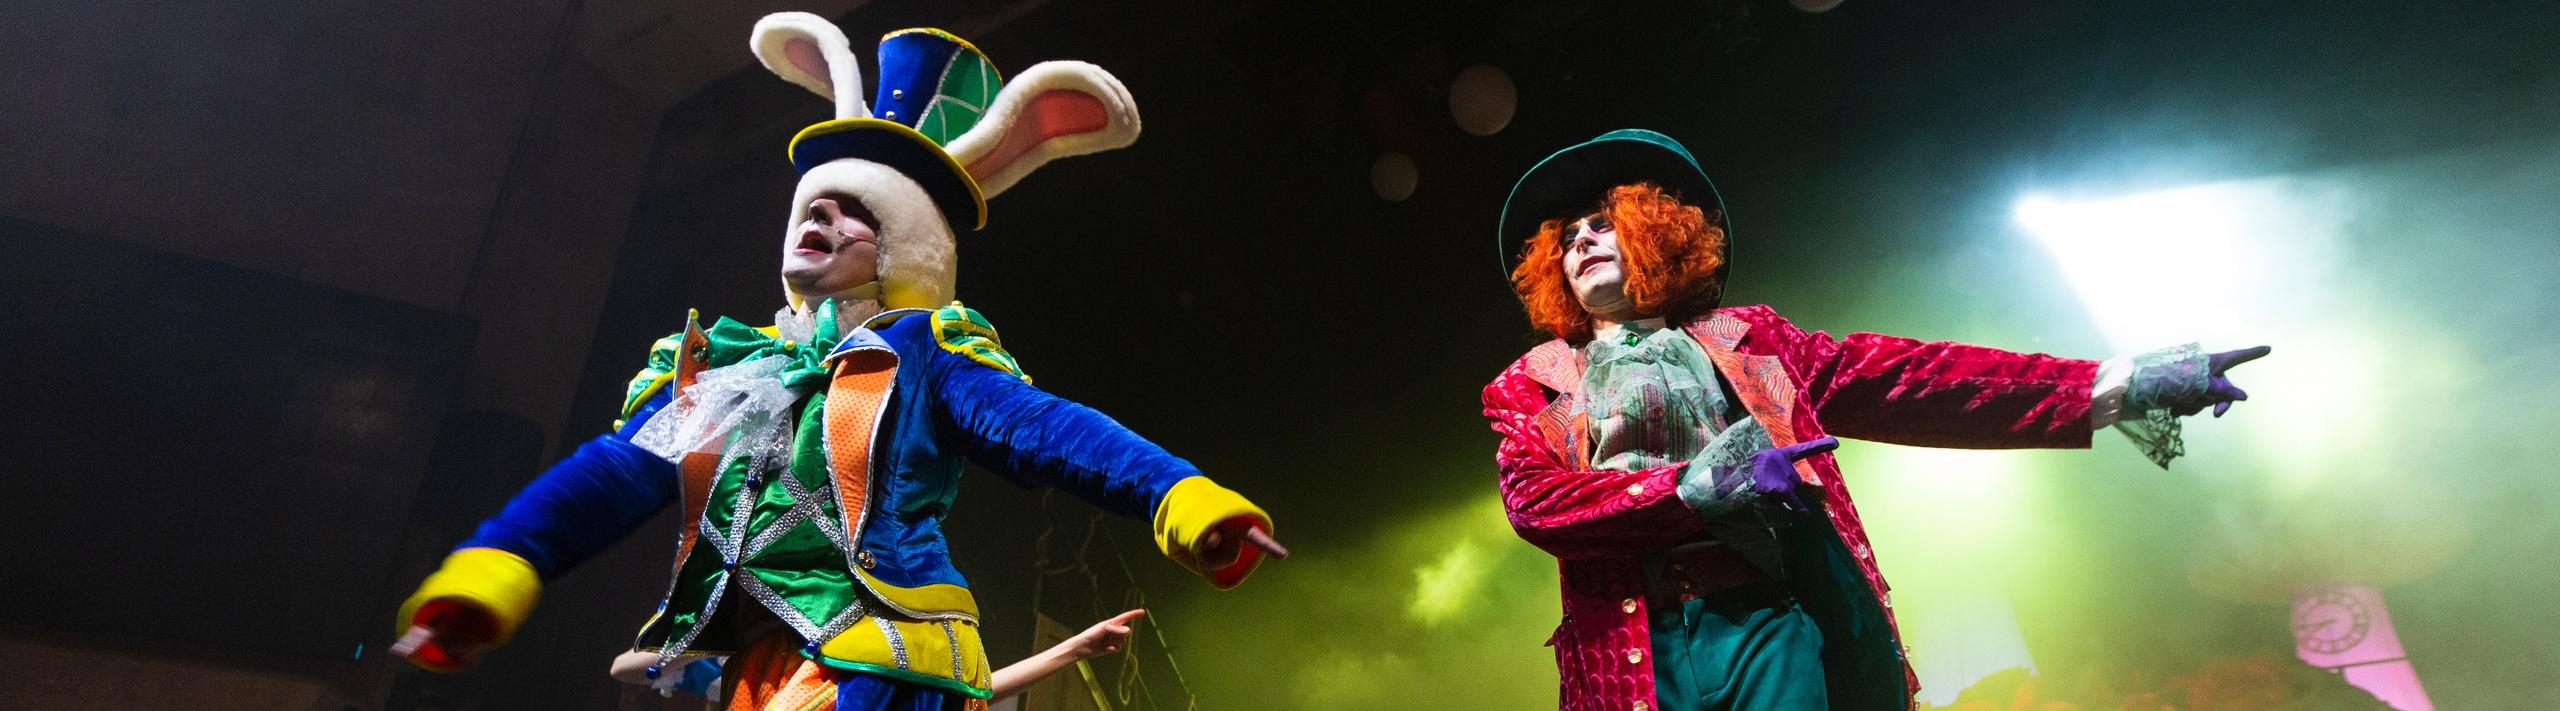 Цирковое шоу «Алиса в стране чудес» в «Цирке Чудес» в Тёплом Стане